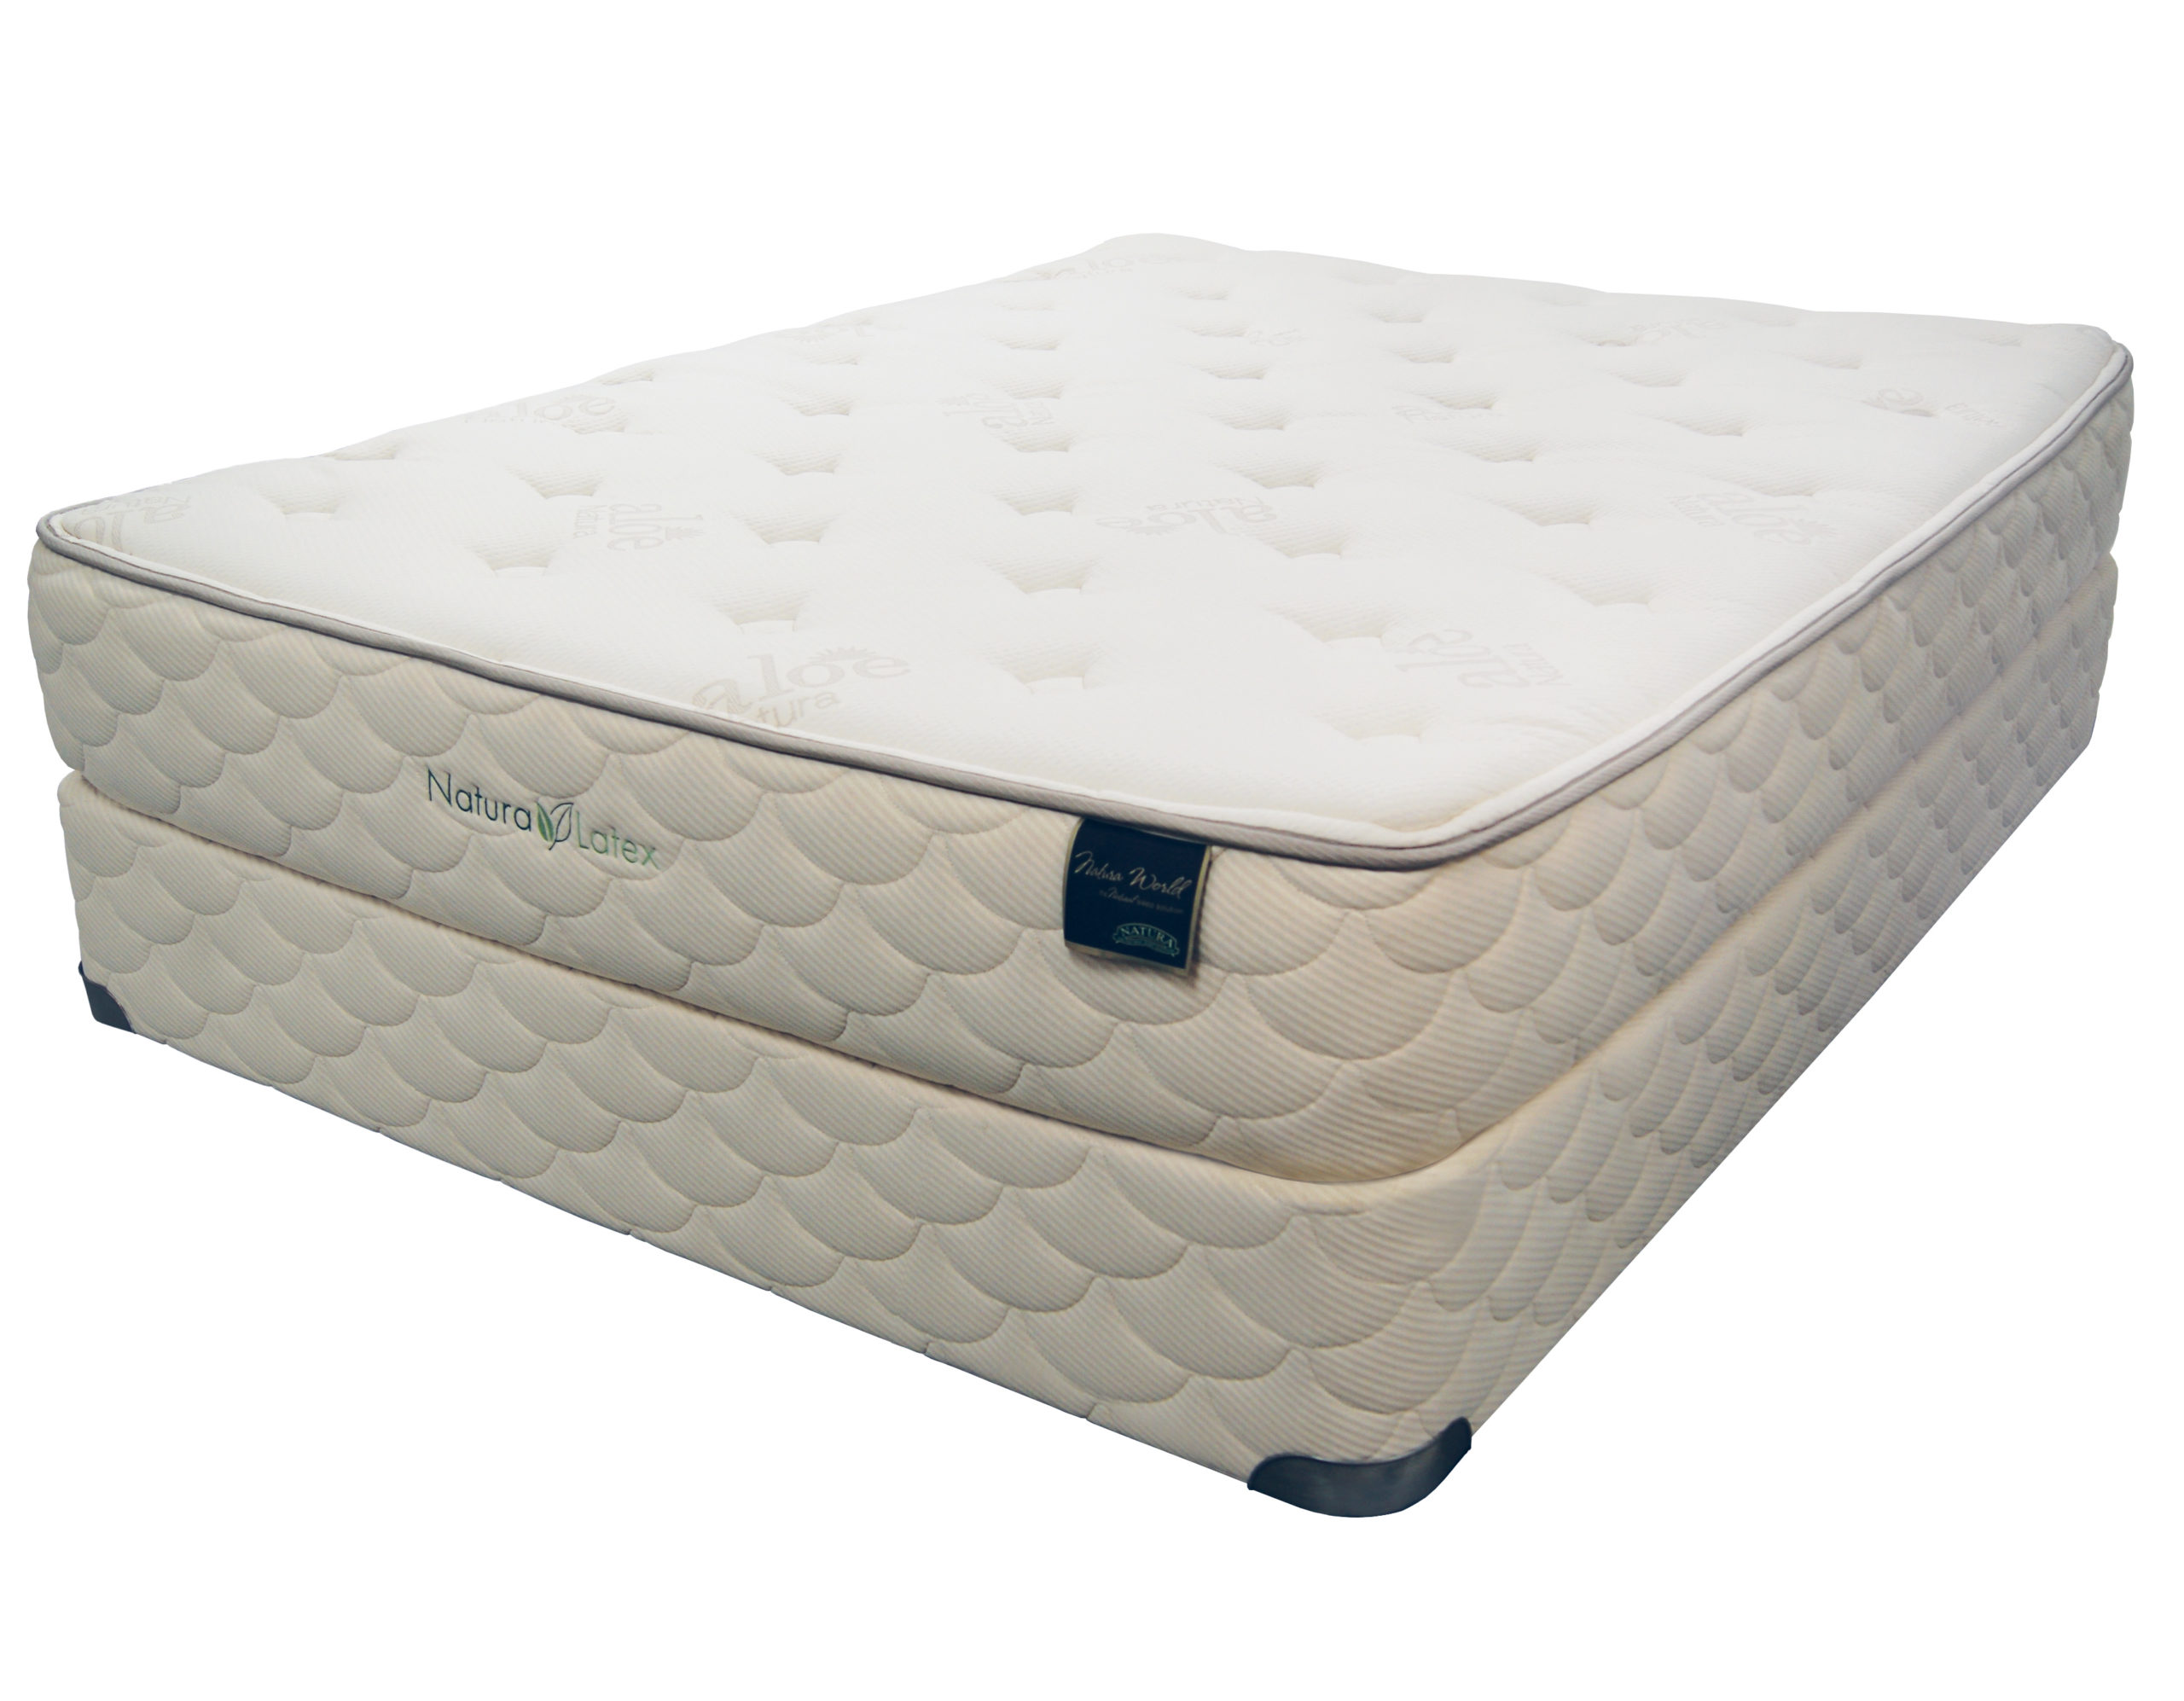 restonic bliss plush latex mattress